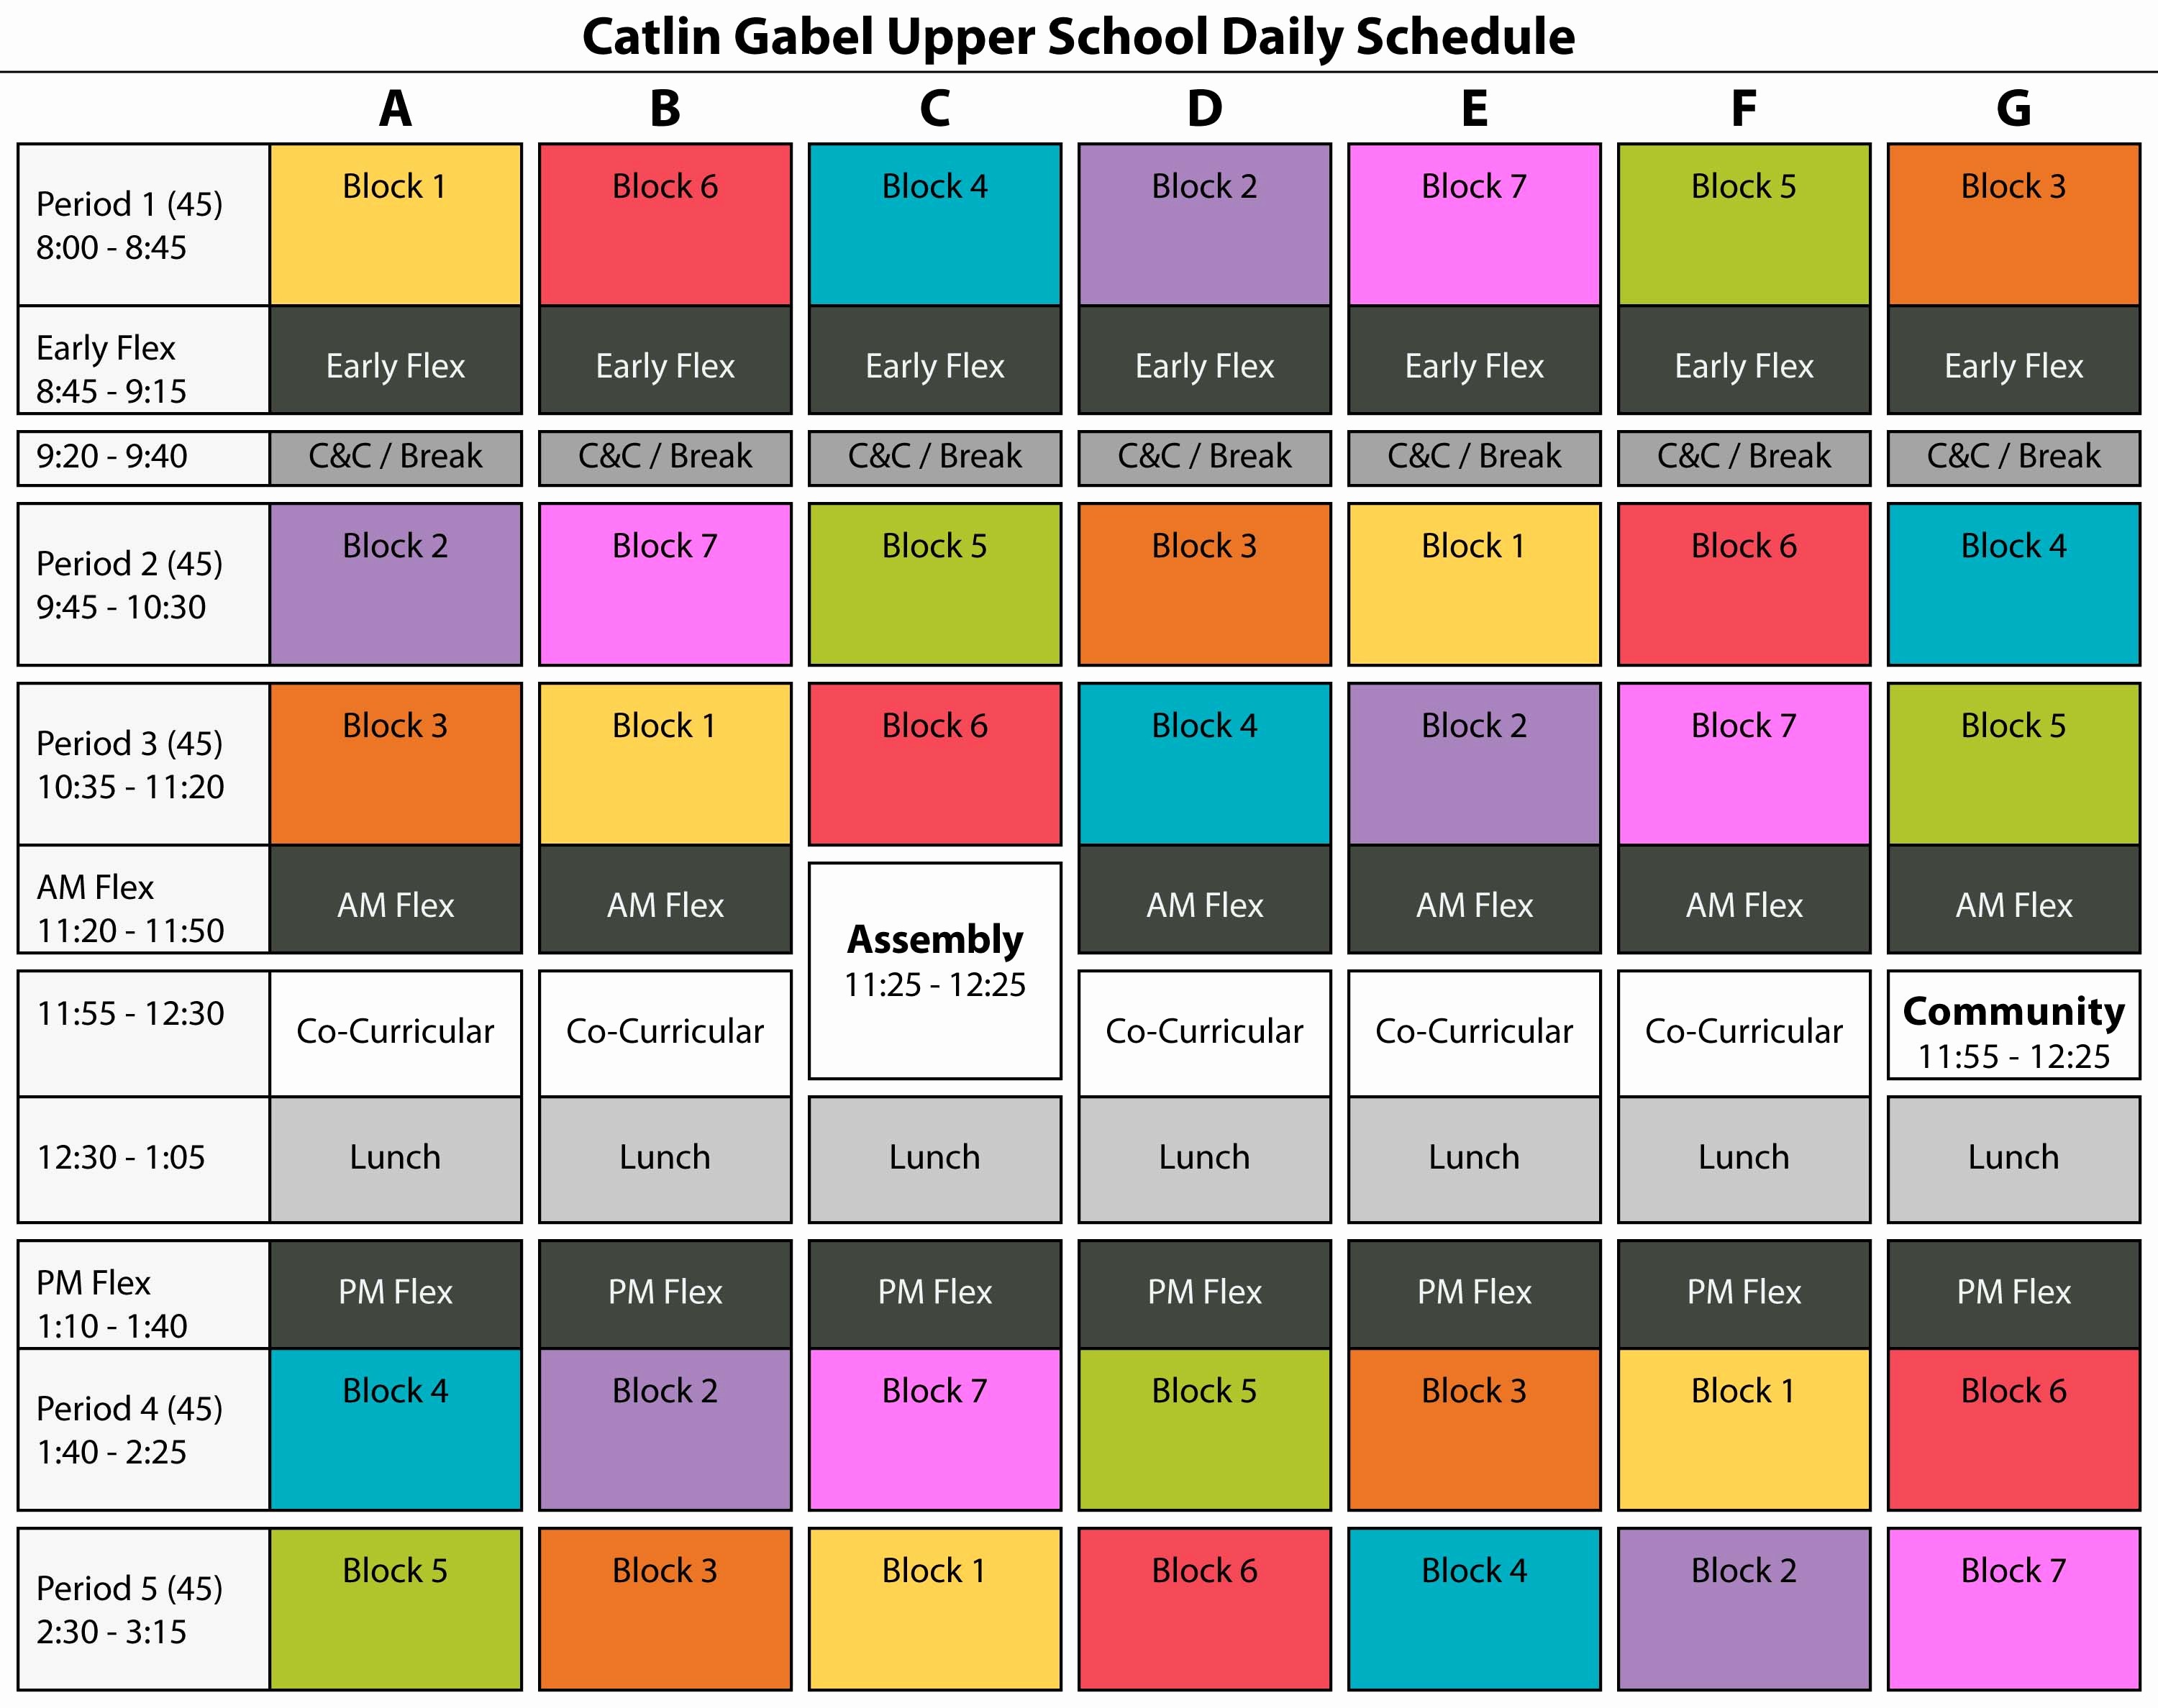 High School Class Schedule Sample Elegant Catlin Gabel School Schedule